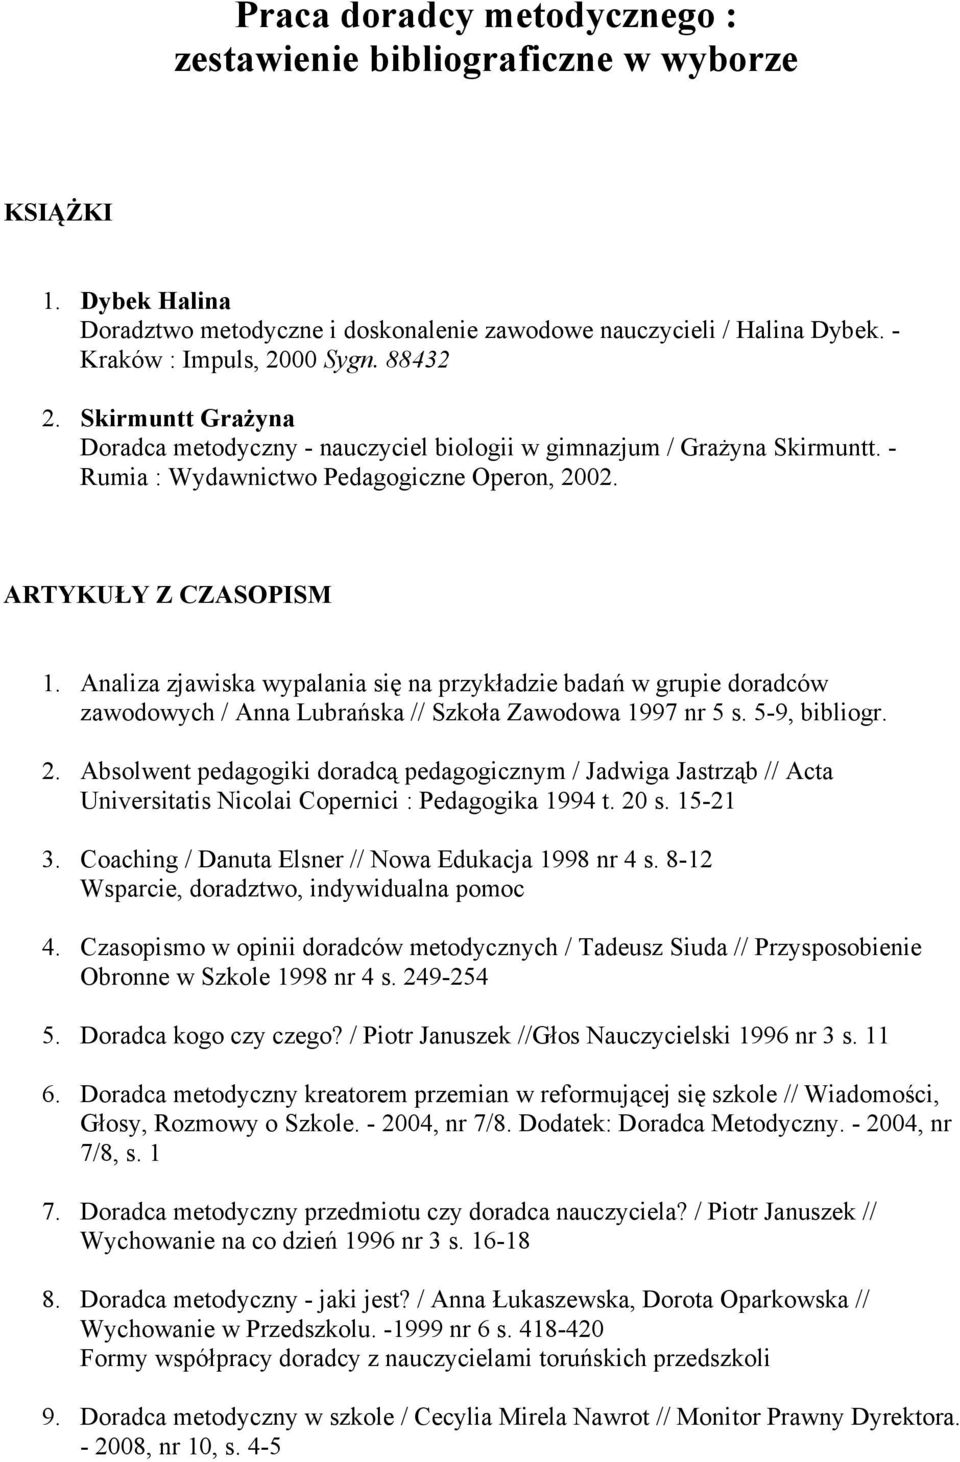 Analiza zjawiska wypalania się na przykładzie badań w grupie doradców zawodowych / Anna Lubrańska // Szkoła Zawodowa 1997 nr 5 s. 5-9, bibliogr. 2.